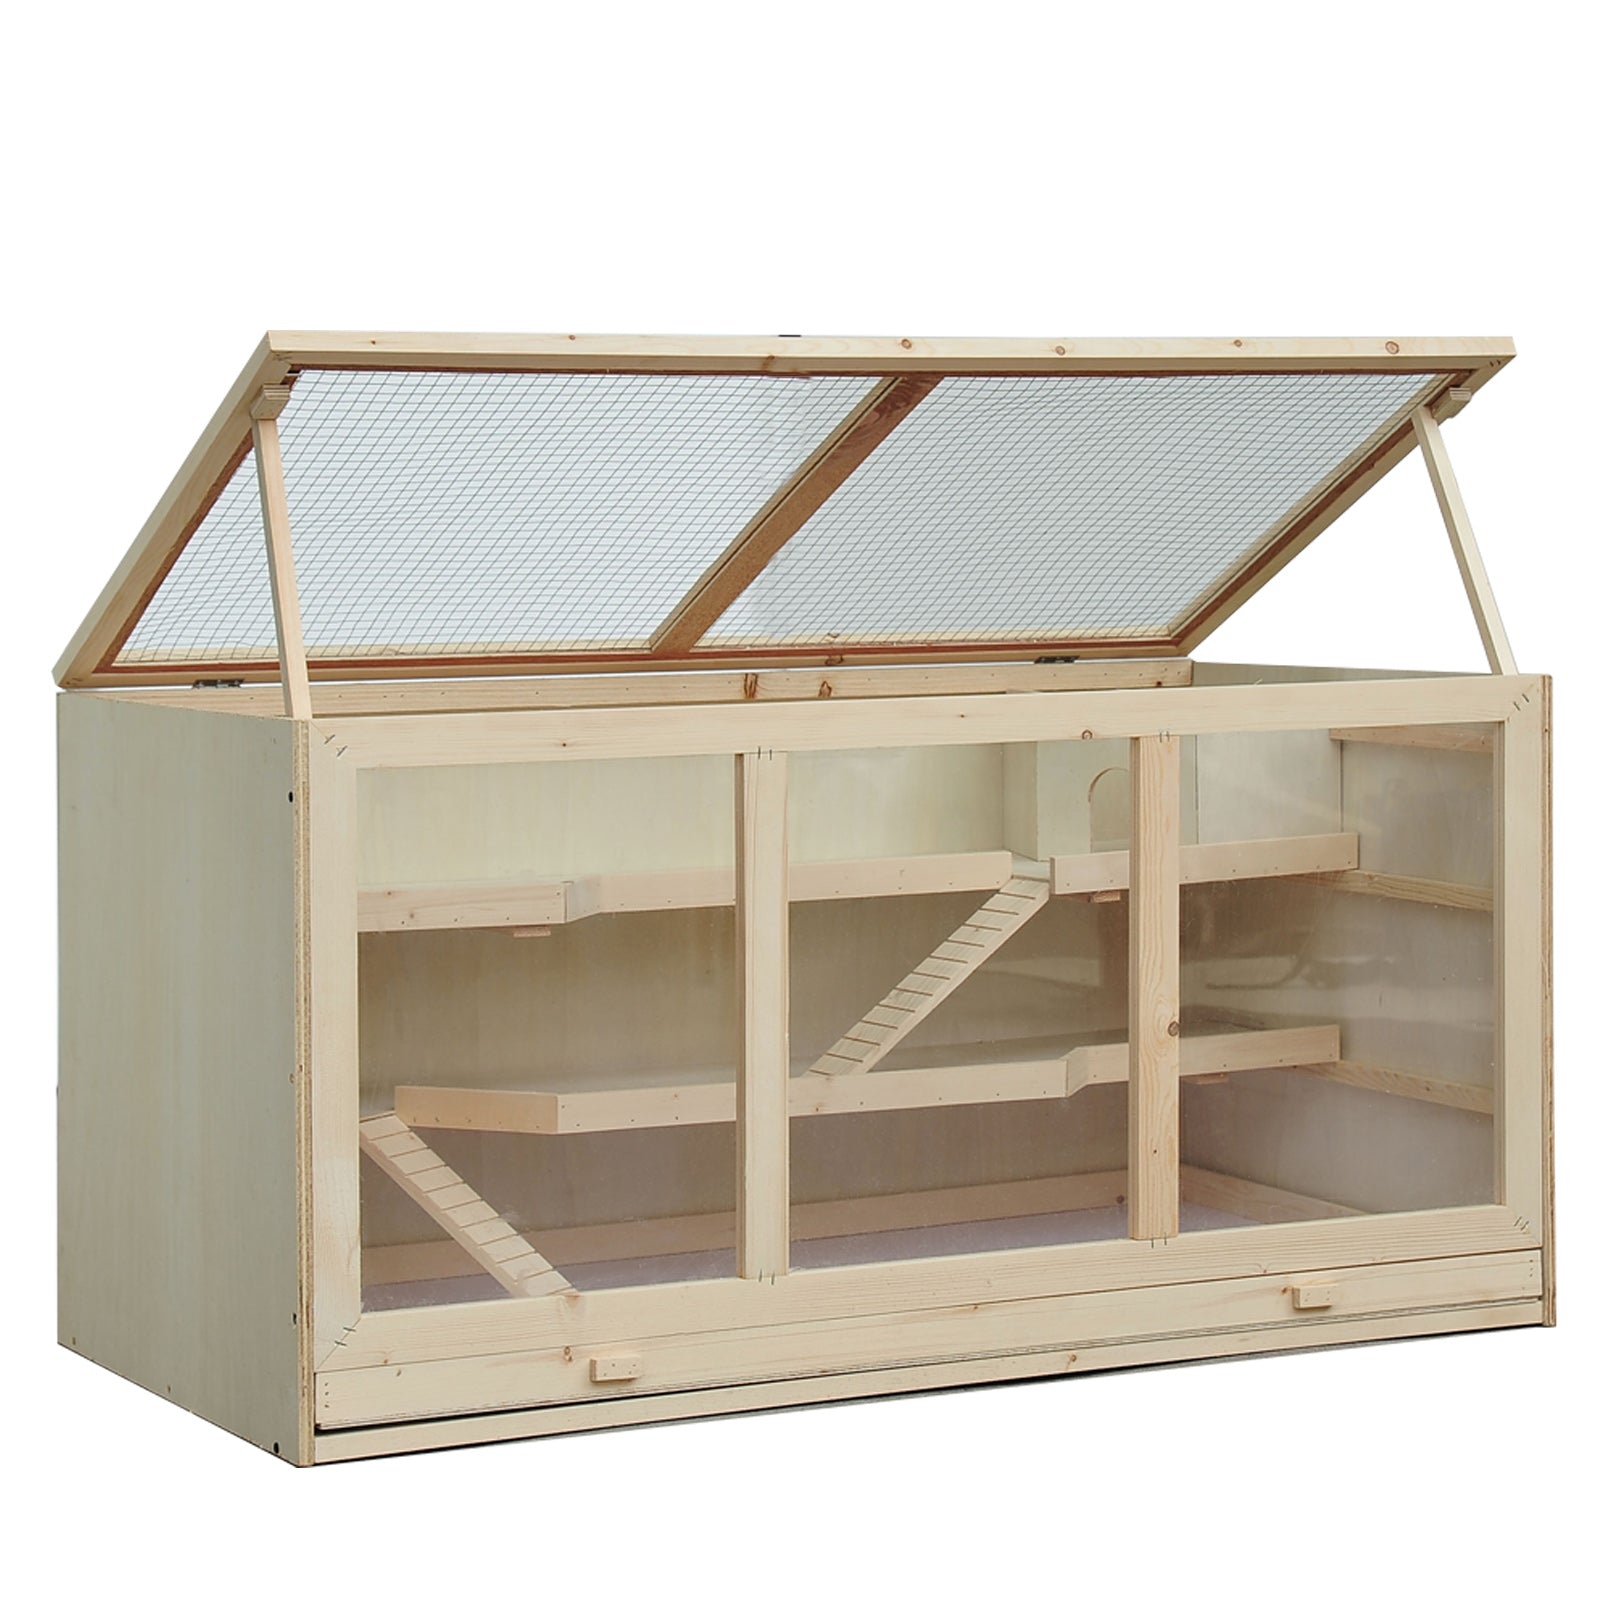 Hamster Cage, 115Lx60Wx58H cm, Fir, PVC-Natural Wood Colour